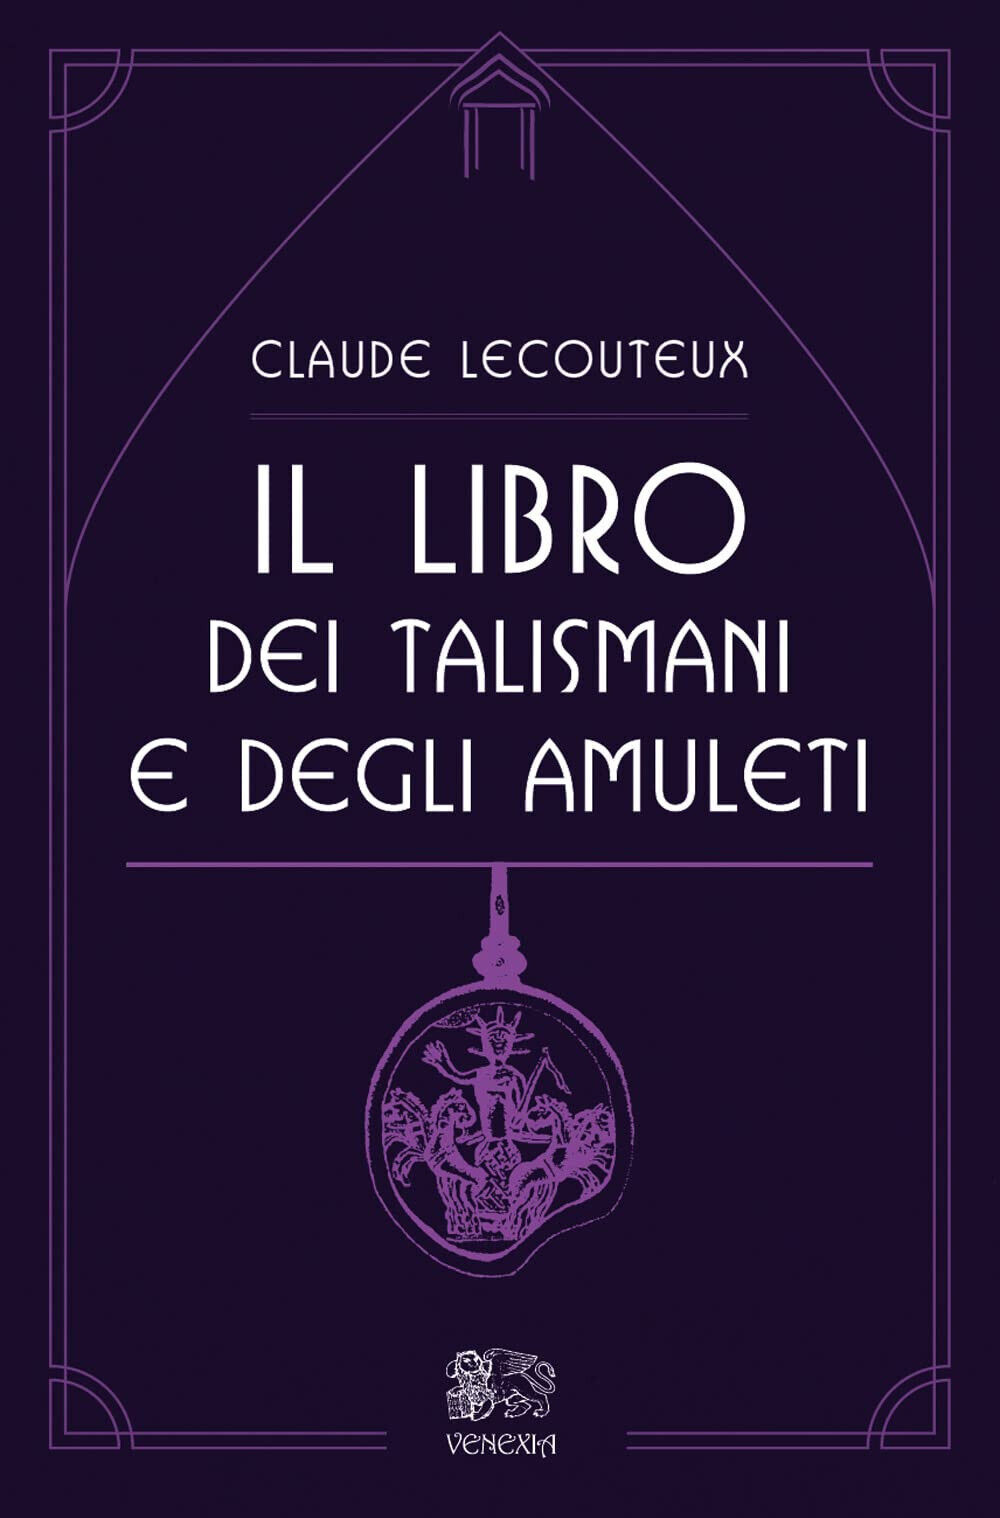 Il libro dei talismani e degli amuleti - Claude Lecouteux - Venexia, 2022 libro usato